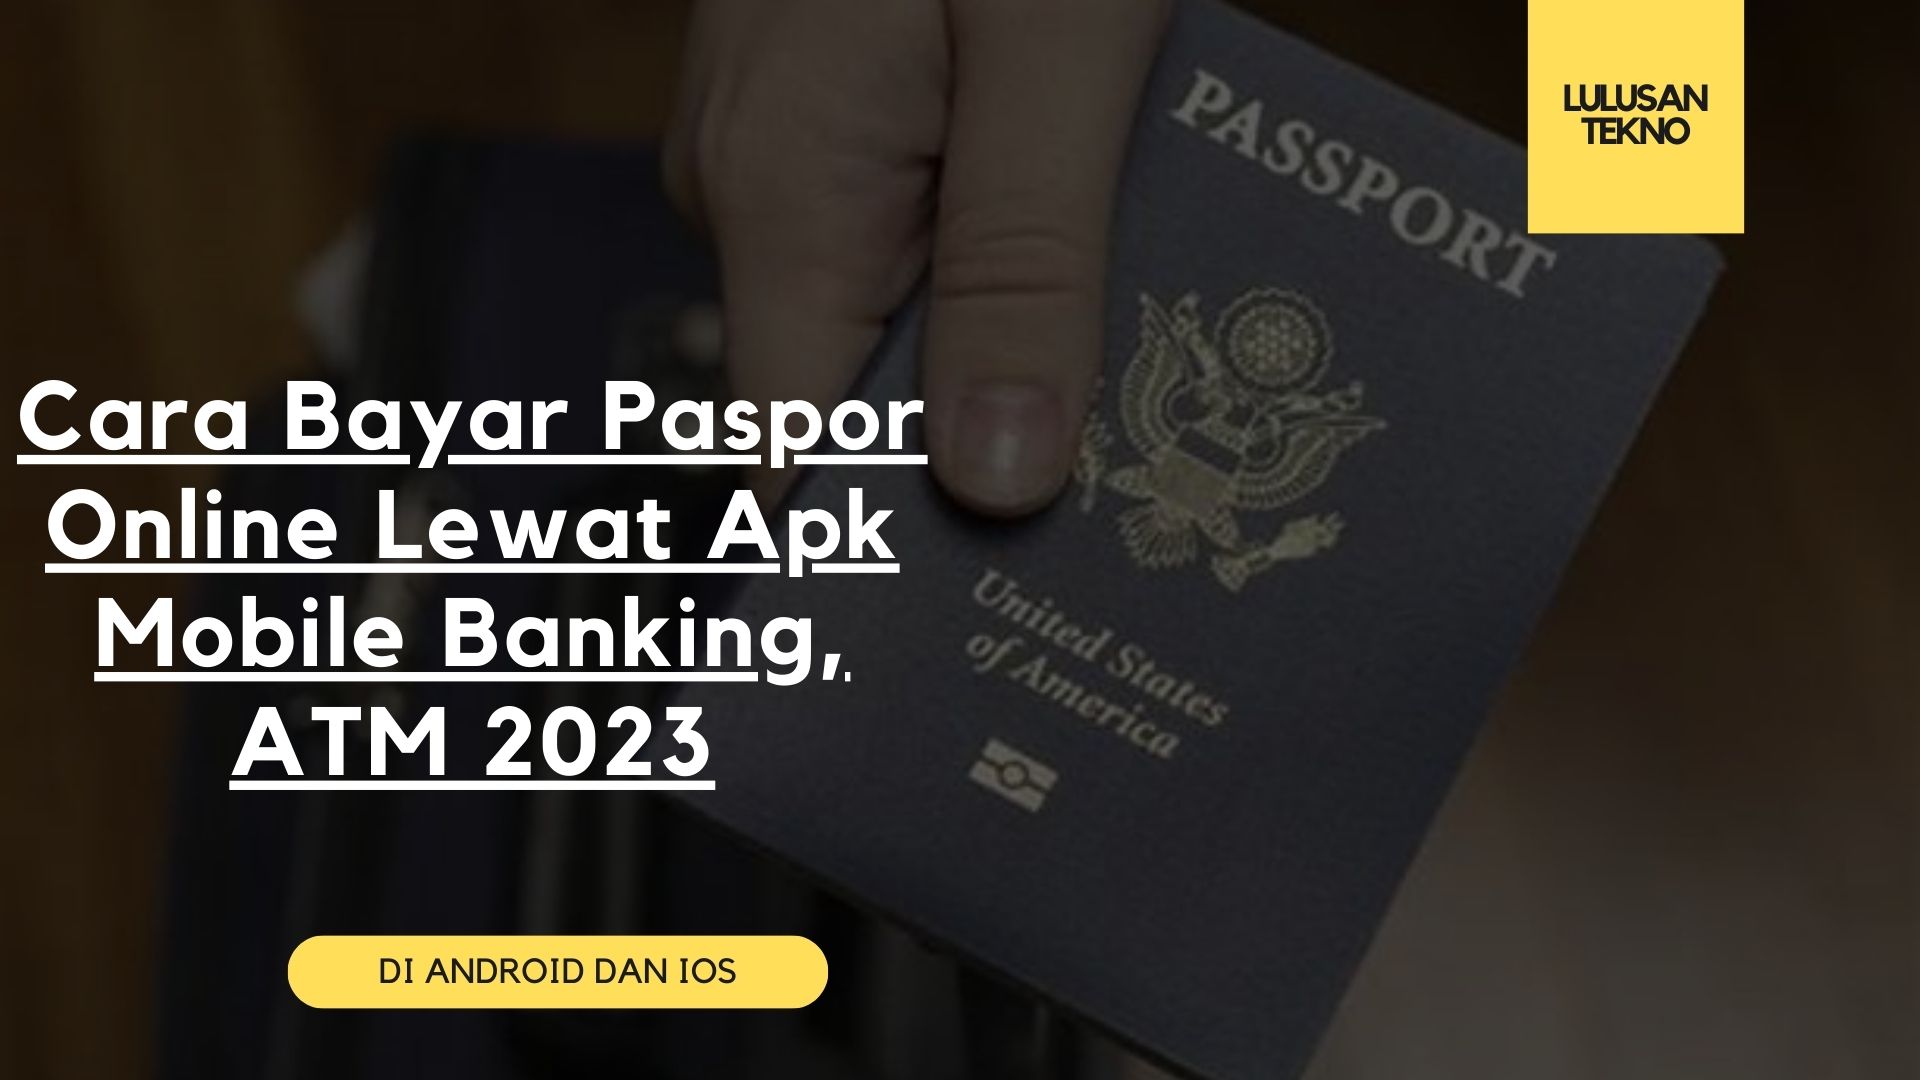 Cara Bayar Paspor Online Lewat Apk Mobile Banking, ATM 2023